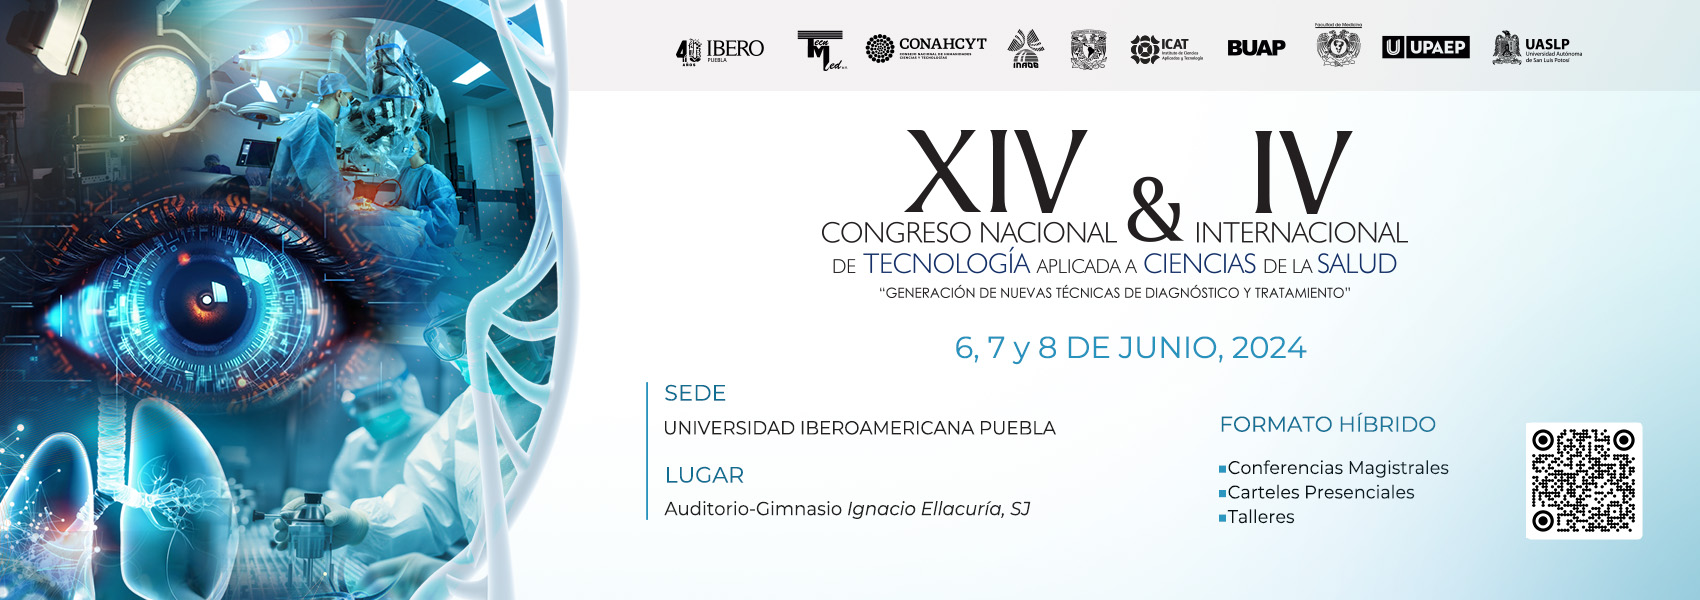 XIV Congreso Nacional de Tecnología Aplicada a Ciencias de la Salud 2024